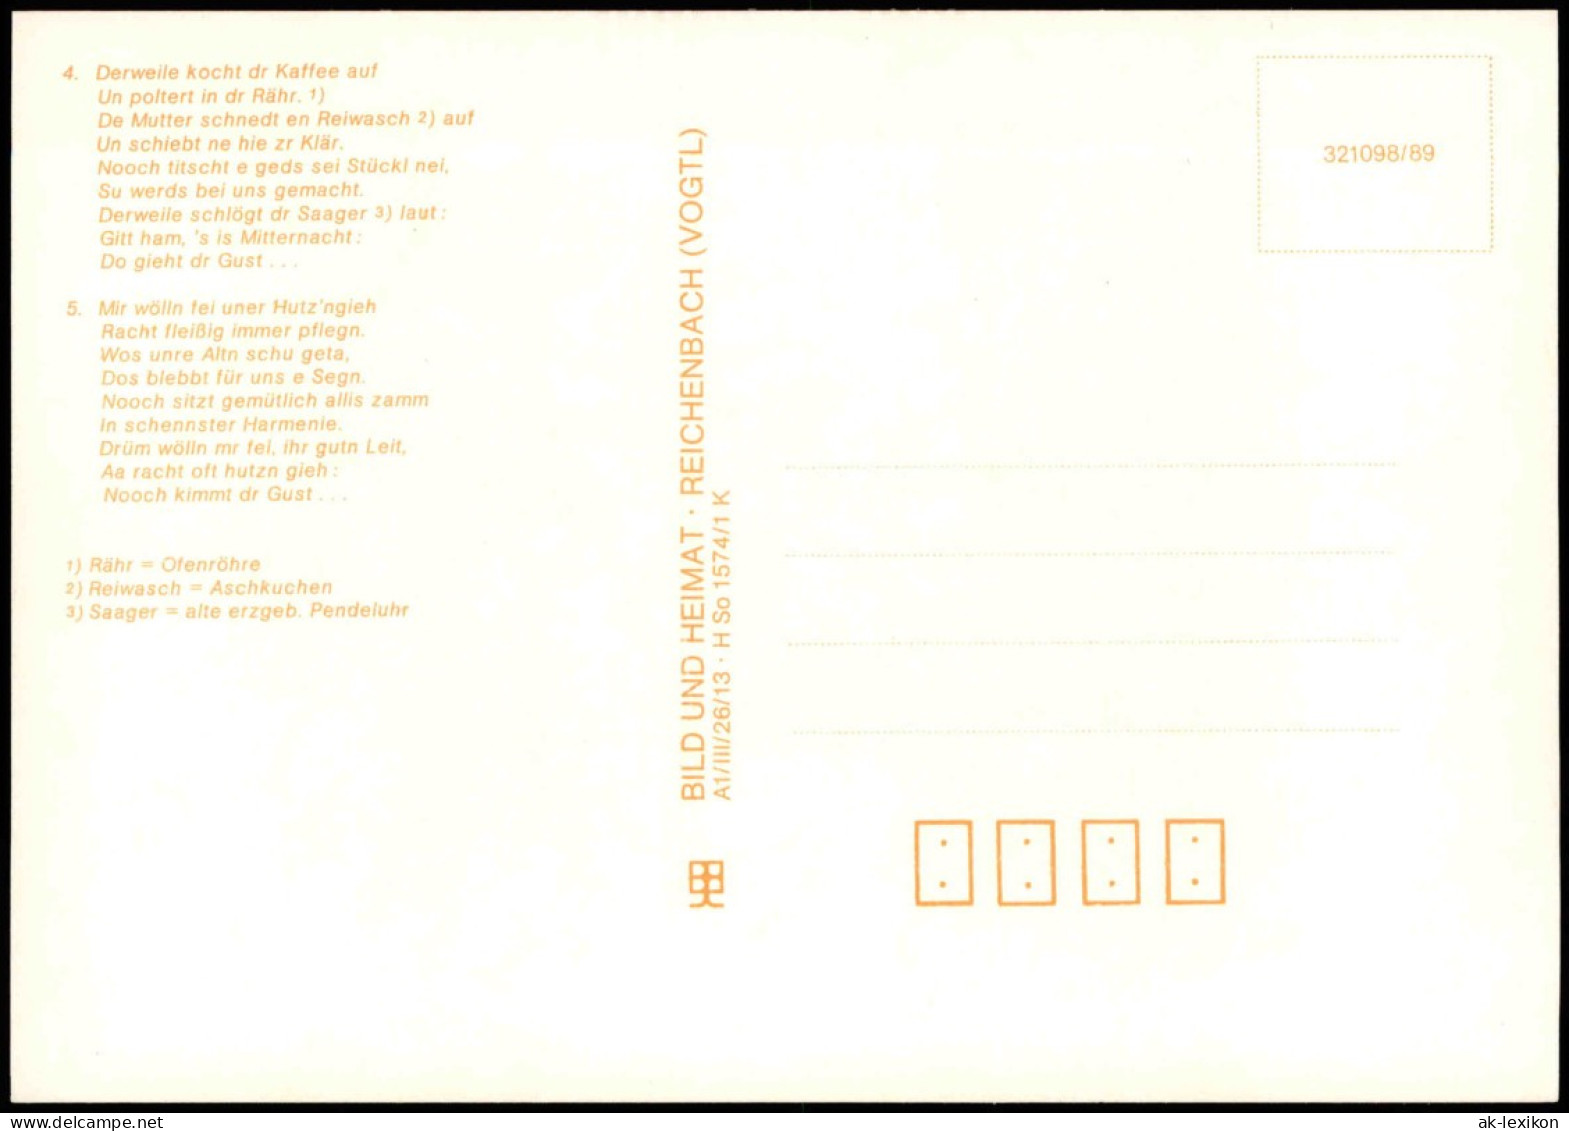 15 Historische Liedpostkarten Aus Dem Erzgebirge Und Vogtland
DDR 1989 - Musique